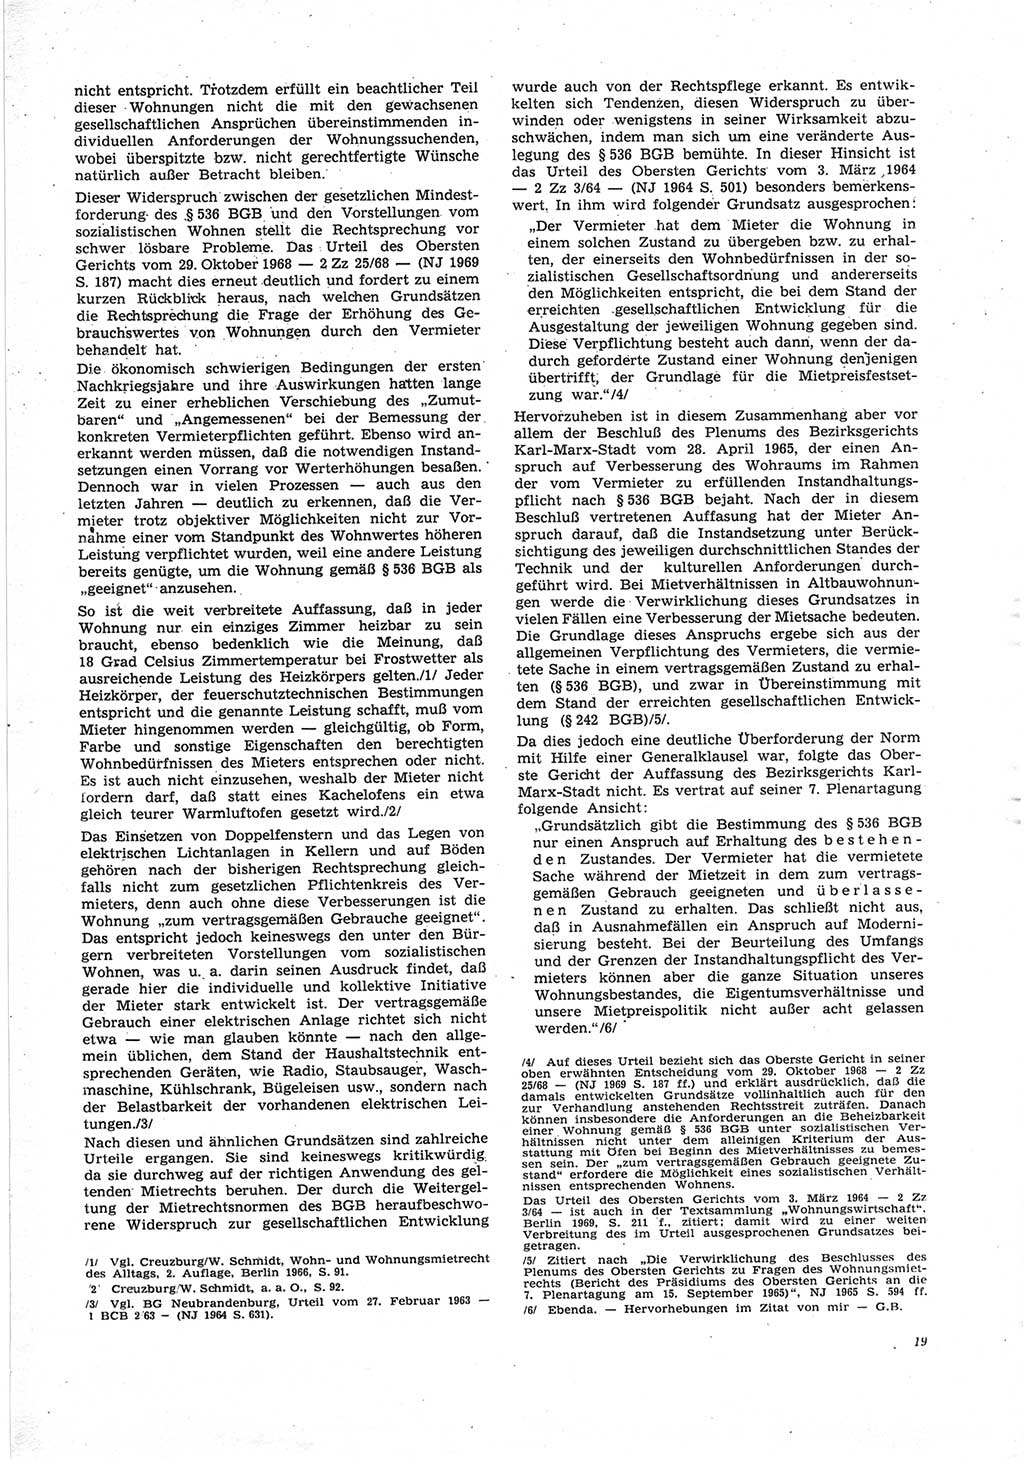 Neue Justiz (NJ), Zeitschrift für Recht und Rechtswissenschaft [Deutsche Demokratische Republik (DDR)], 25. Jahrgang 1971, Seite 19 (NJ DDR 1971, S. 19)